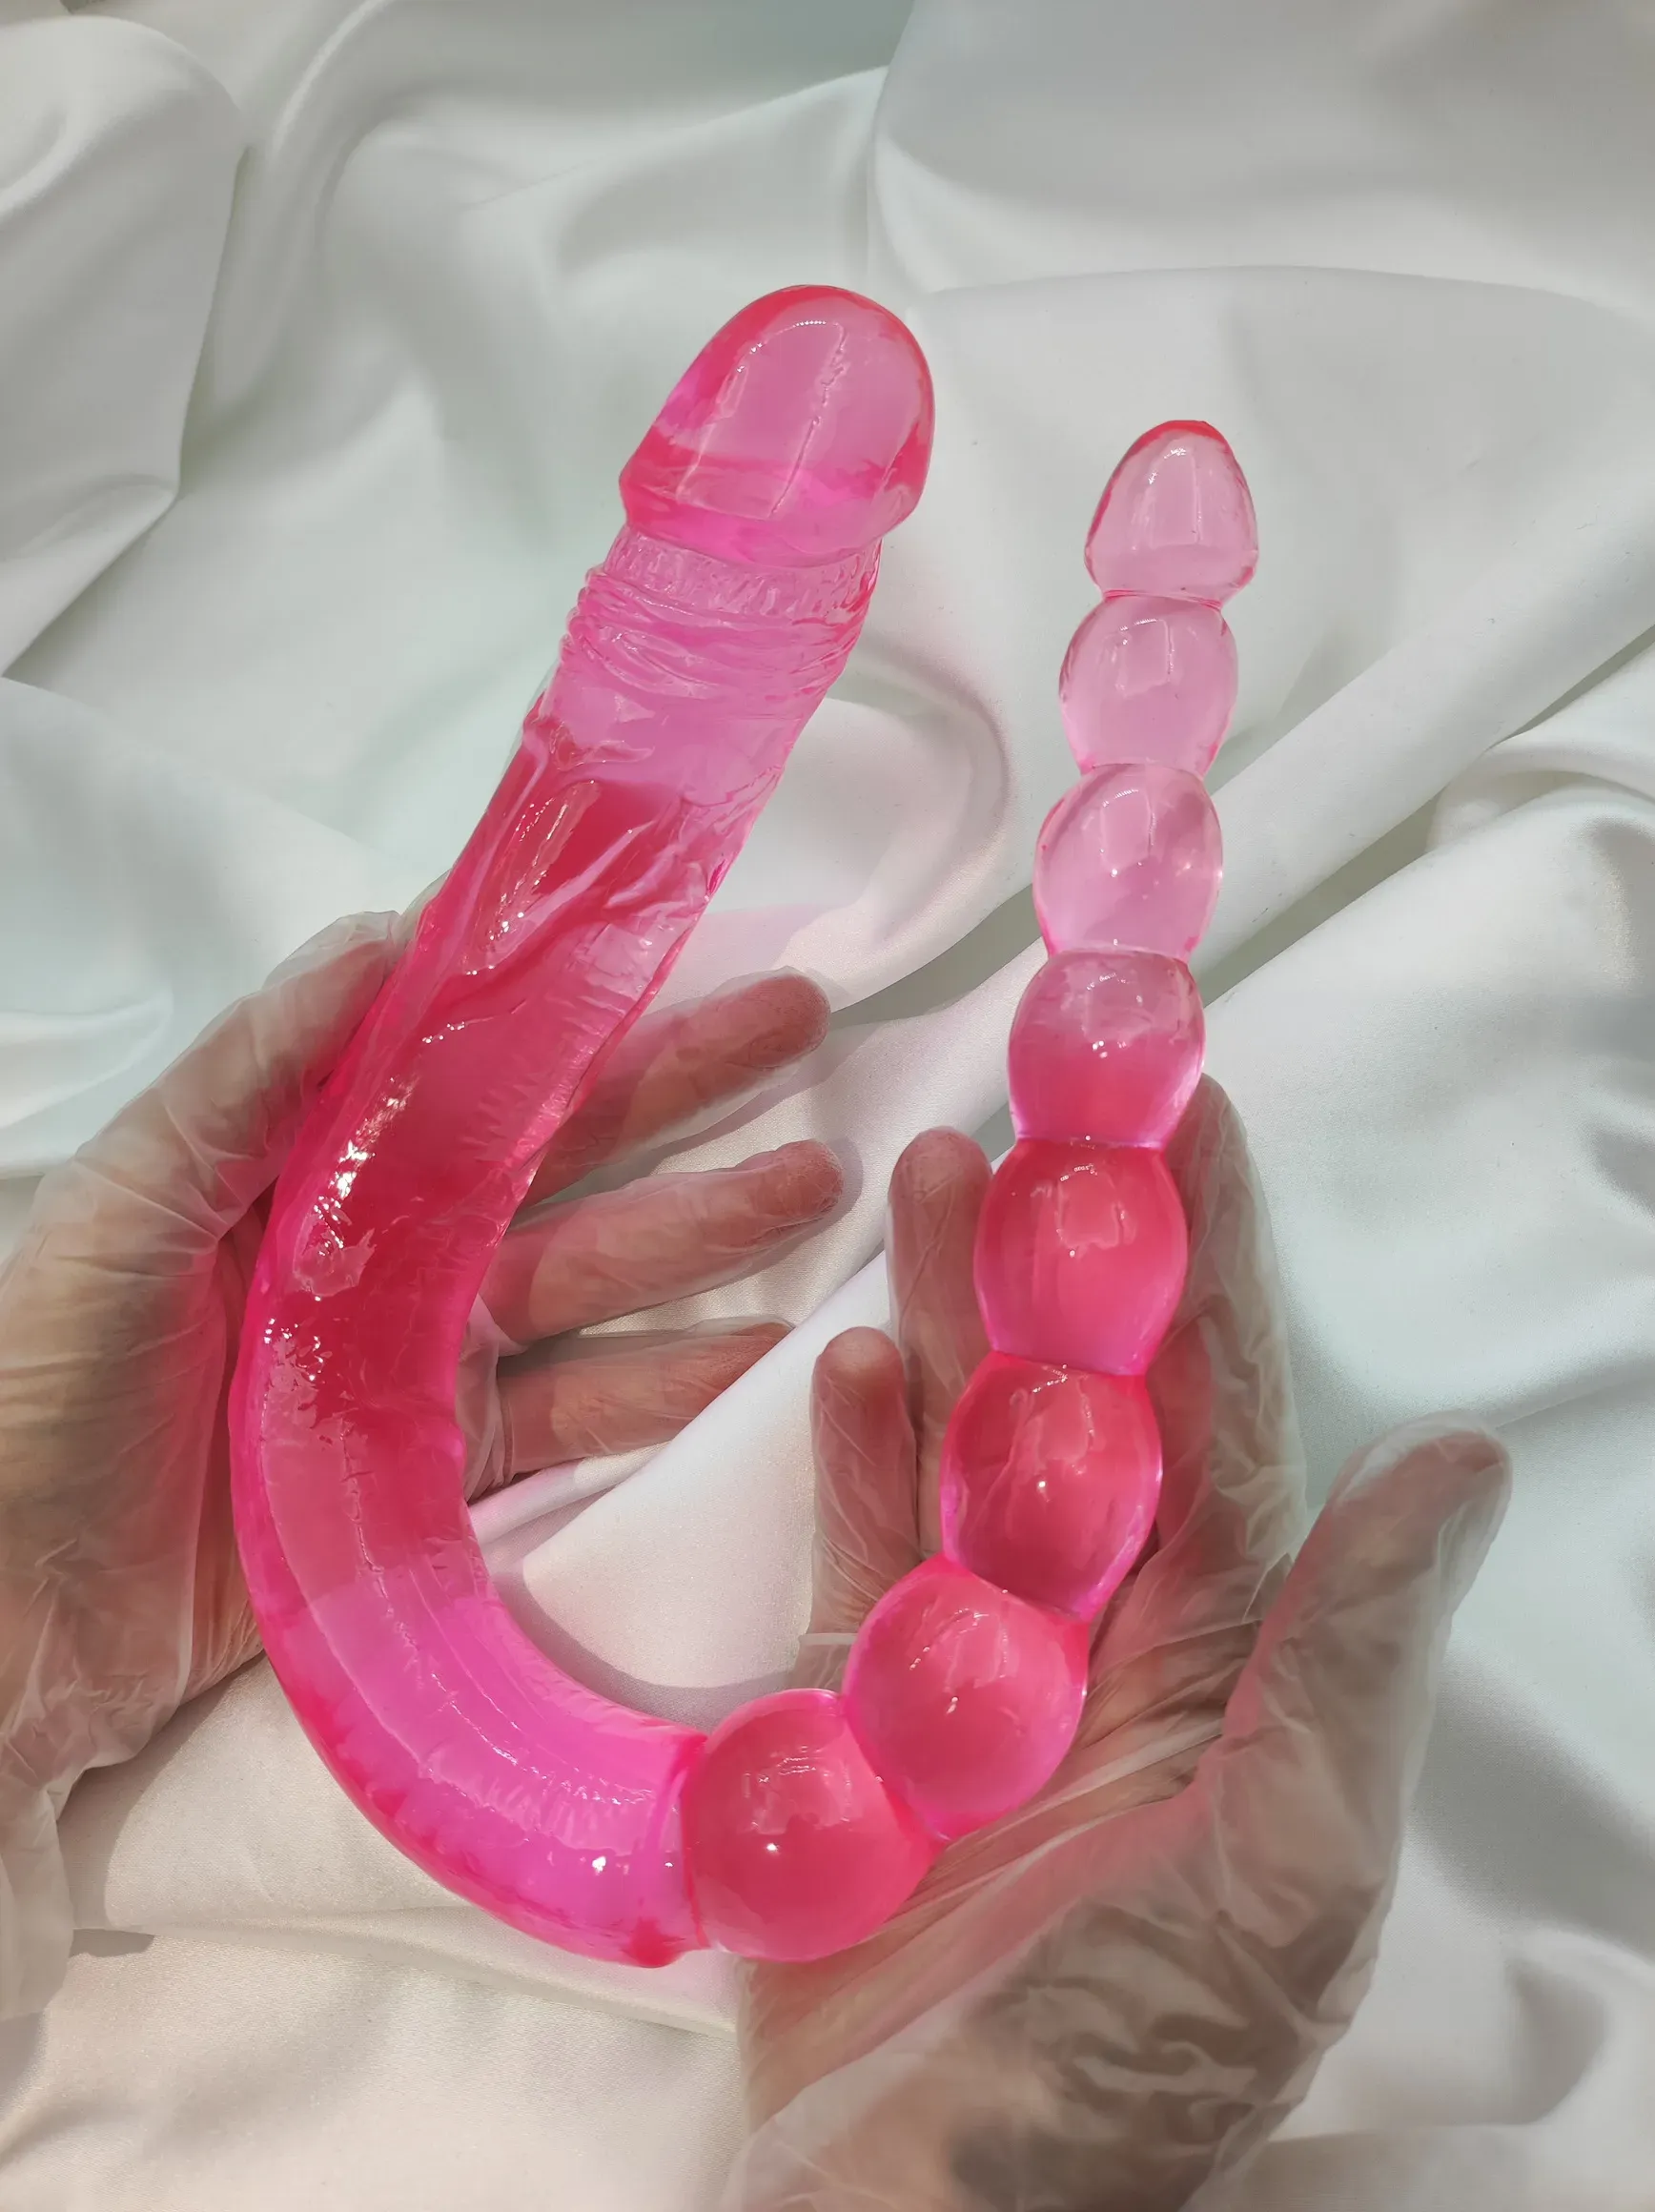 размер секс-игрушки в руках